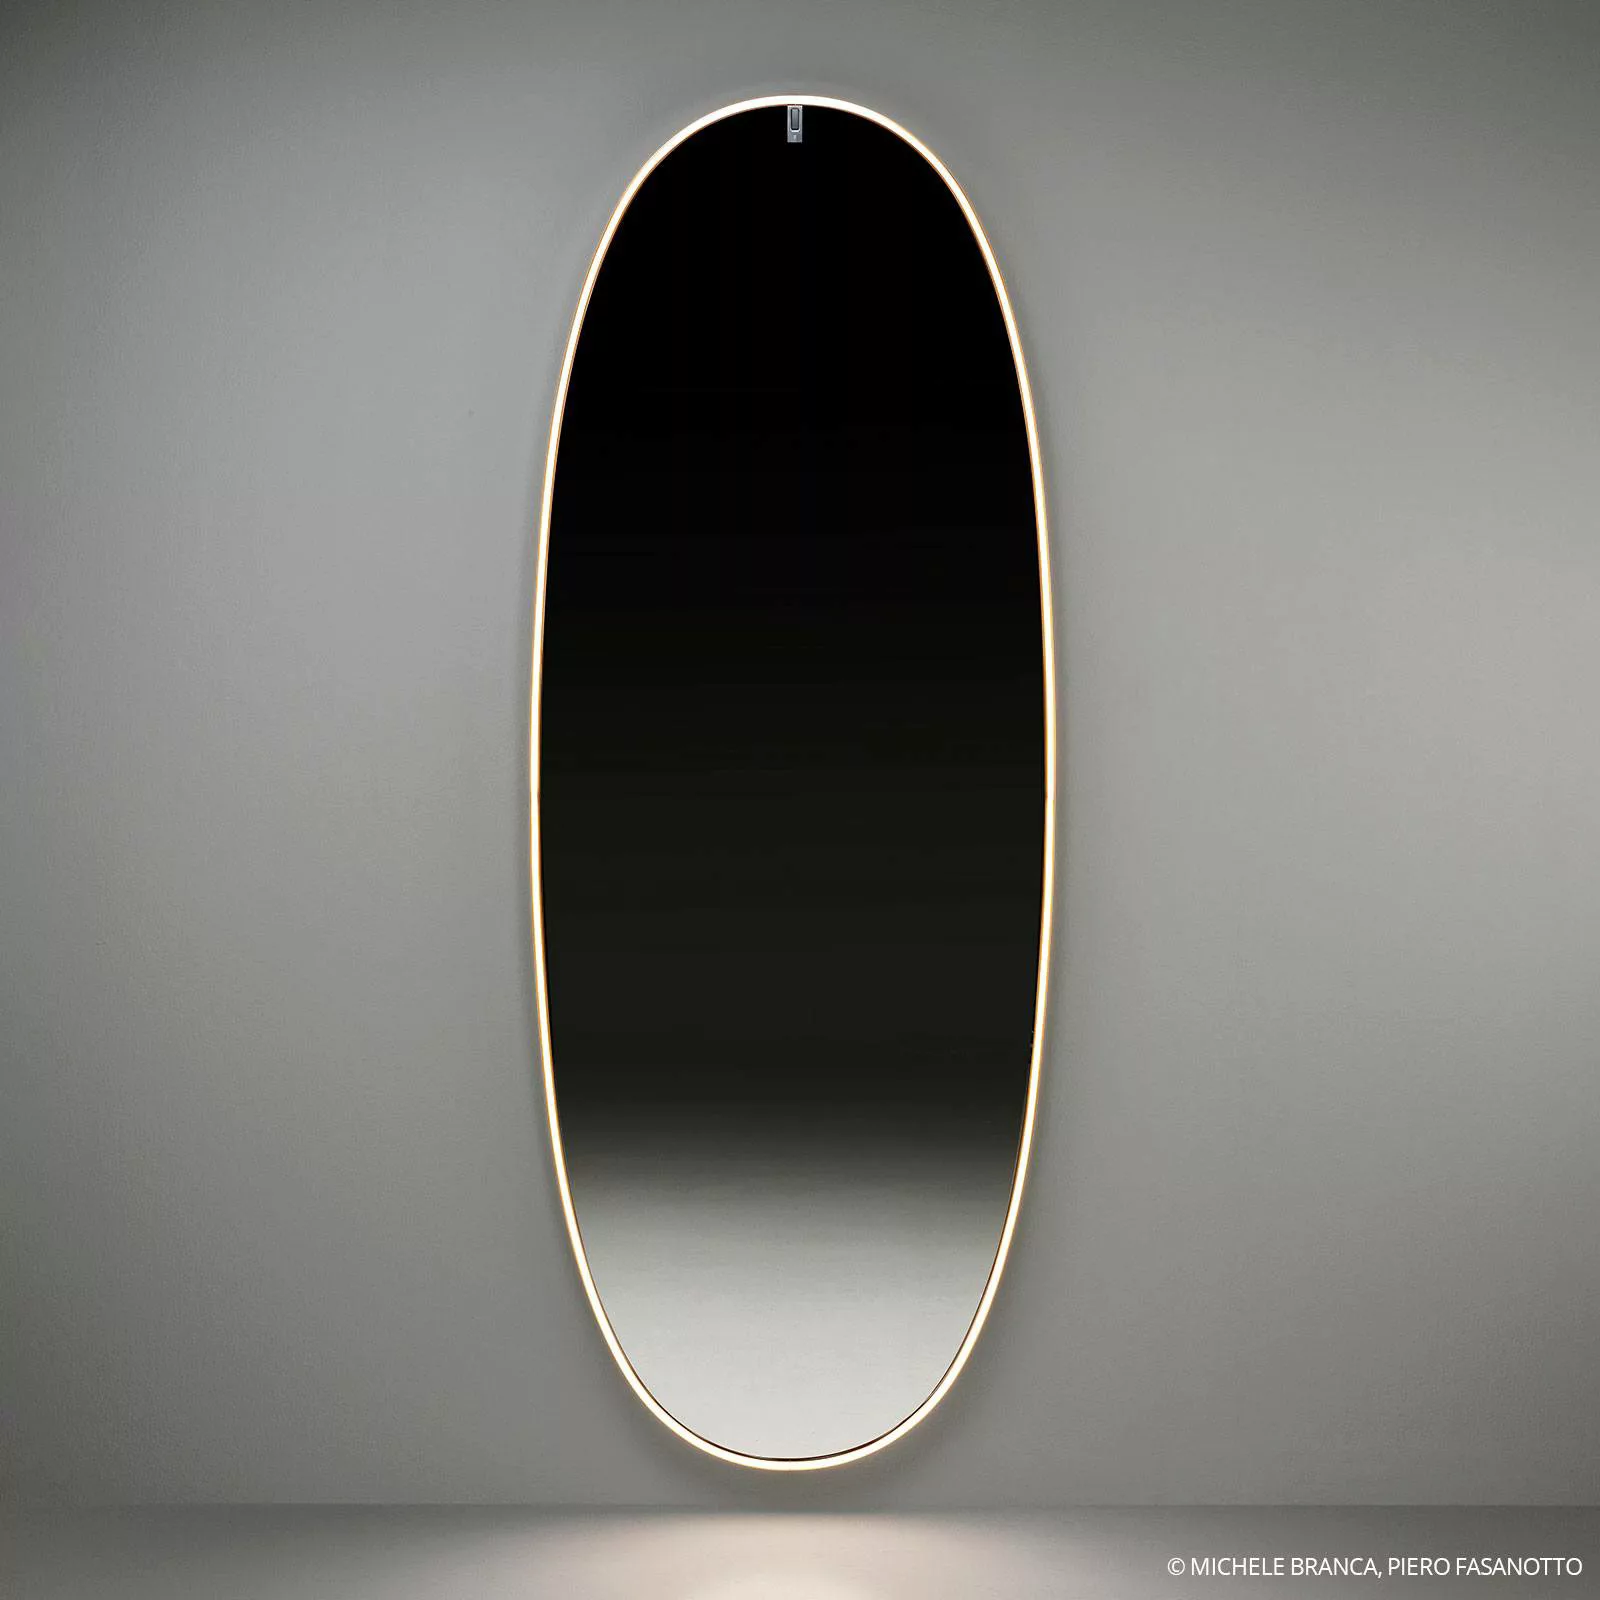 Spiegel leuchtend La Plus Belle silber metall LED / By Starck - H 205 cm - günstig online kaufen